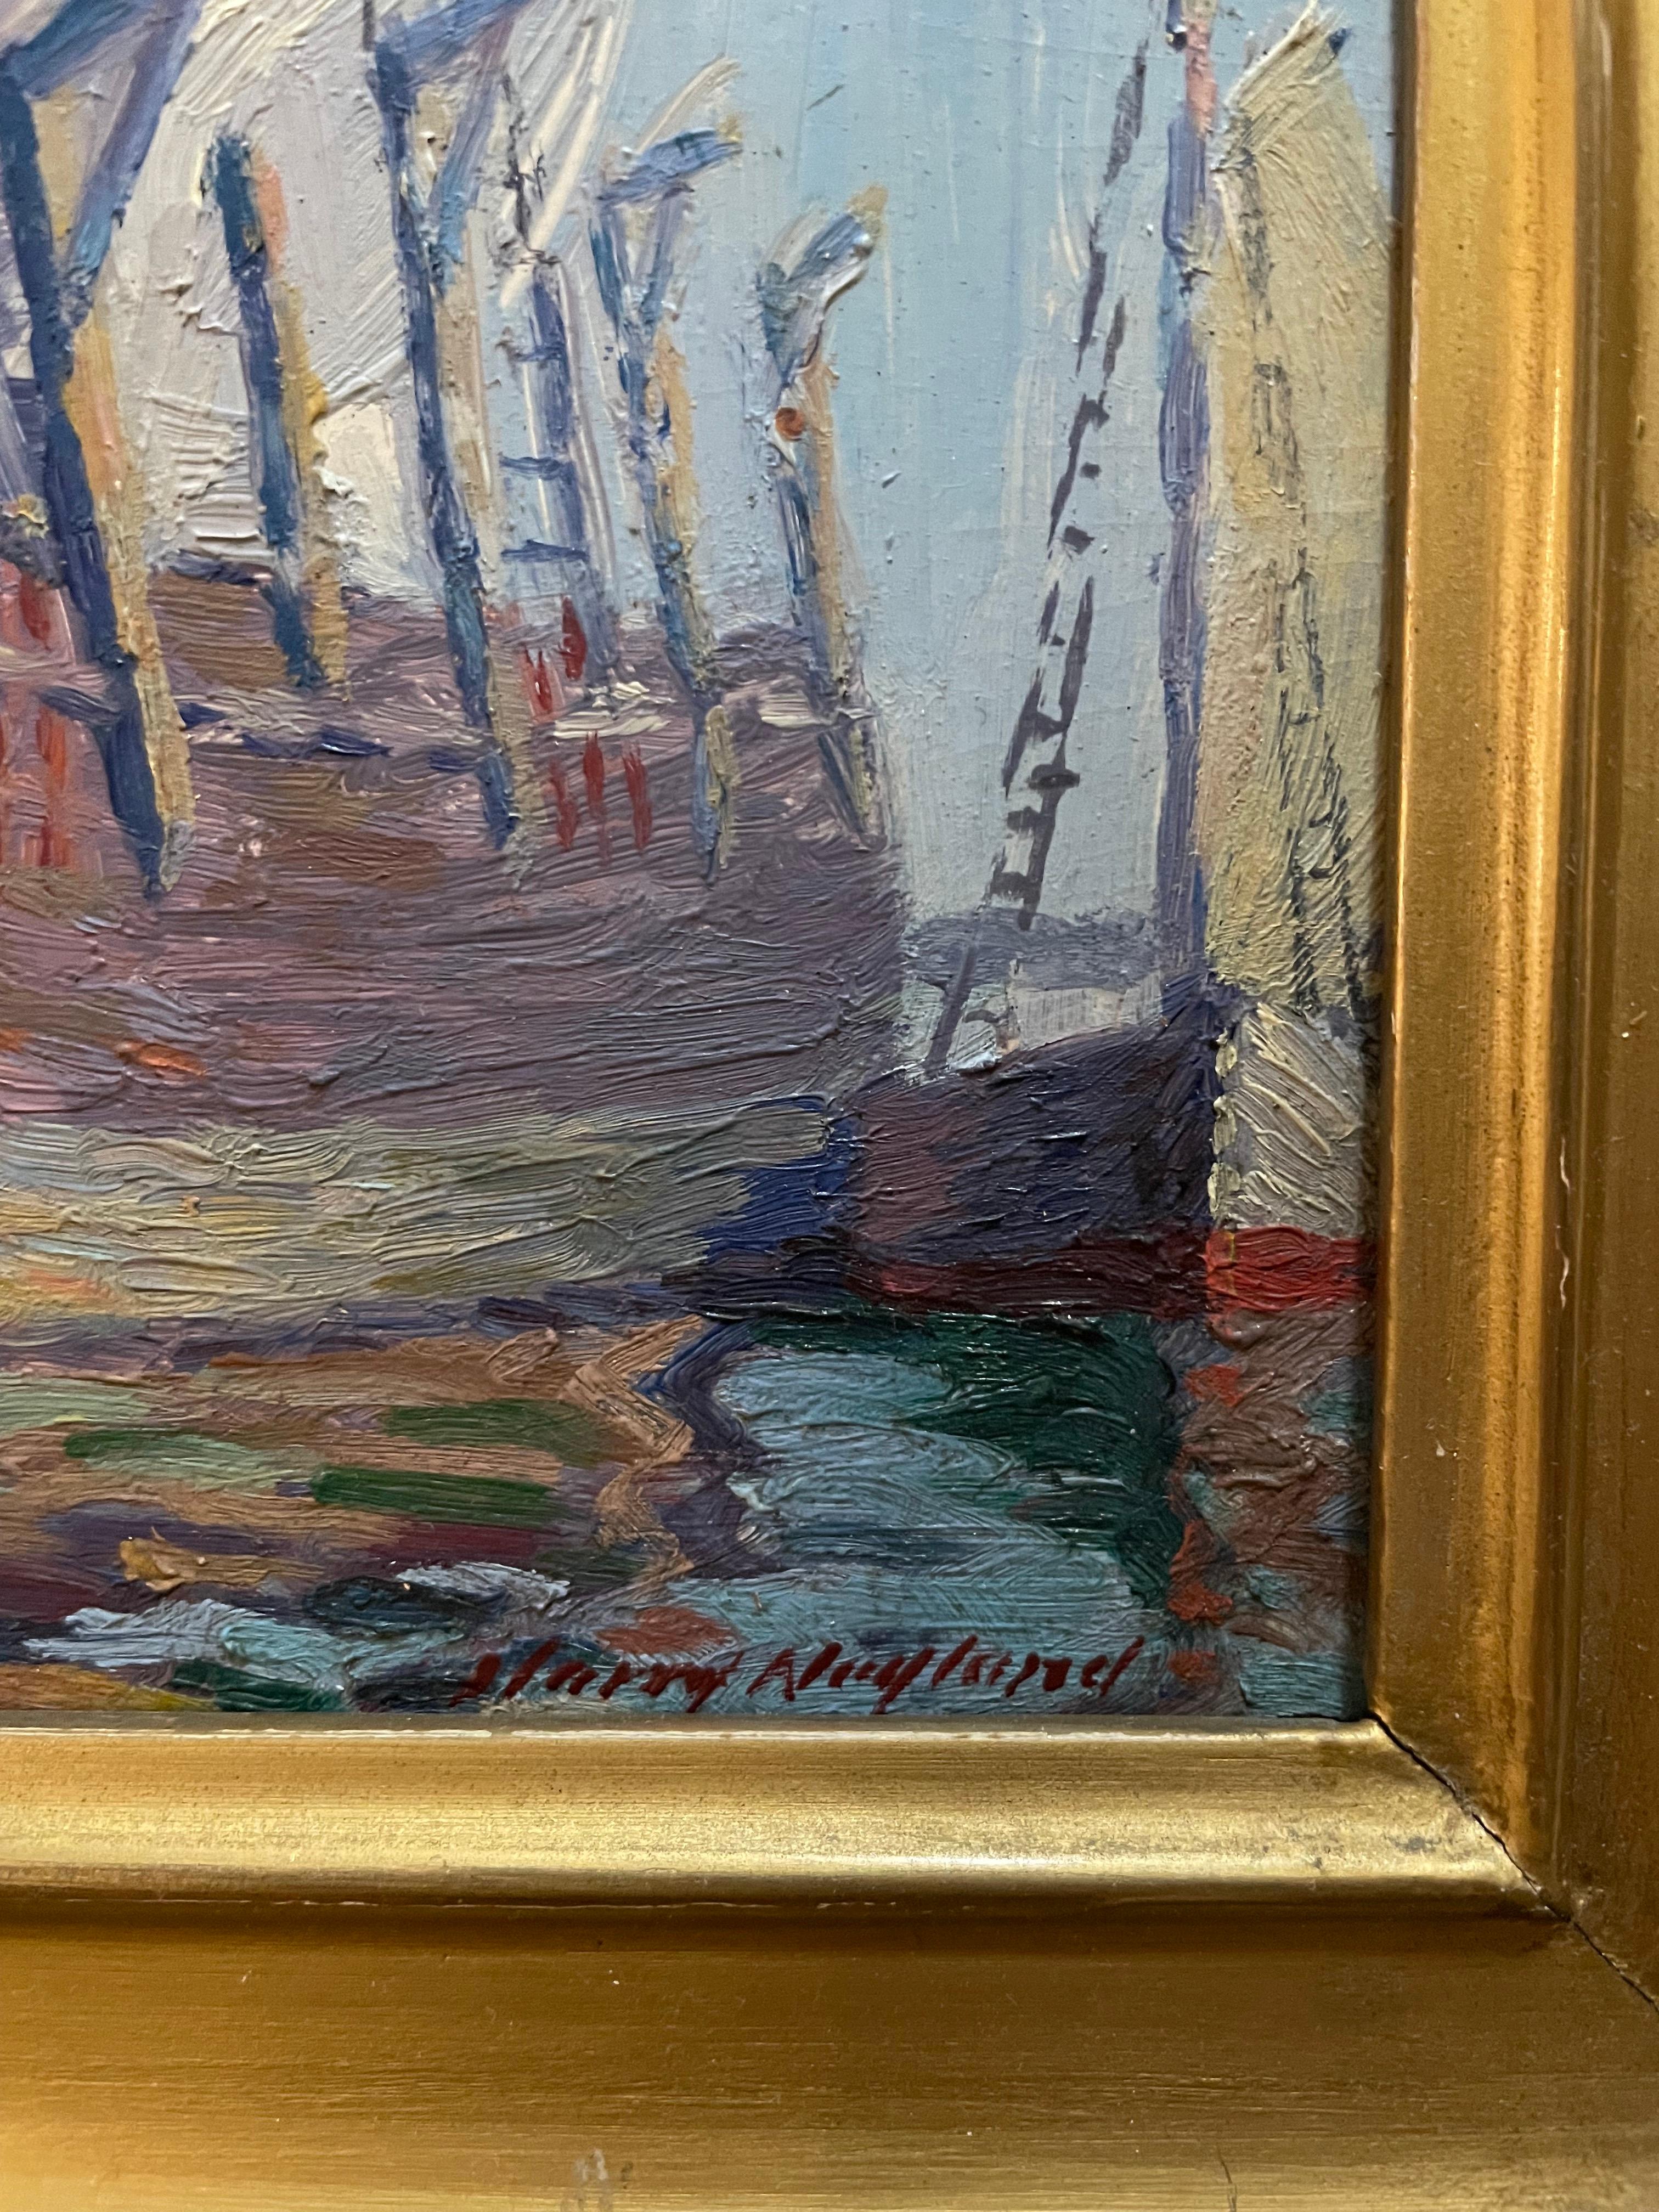 Harry Neyland war ein amerikanischer impressionistischer Maler, geboren 1877-1958 in Massachusetts.

Dieses Gemälde ist eine amerikanische impressionistische Seelandschaft mit großartigen Farben und malerischer Textur.
Beschriftet auf der